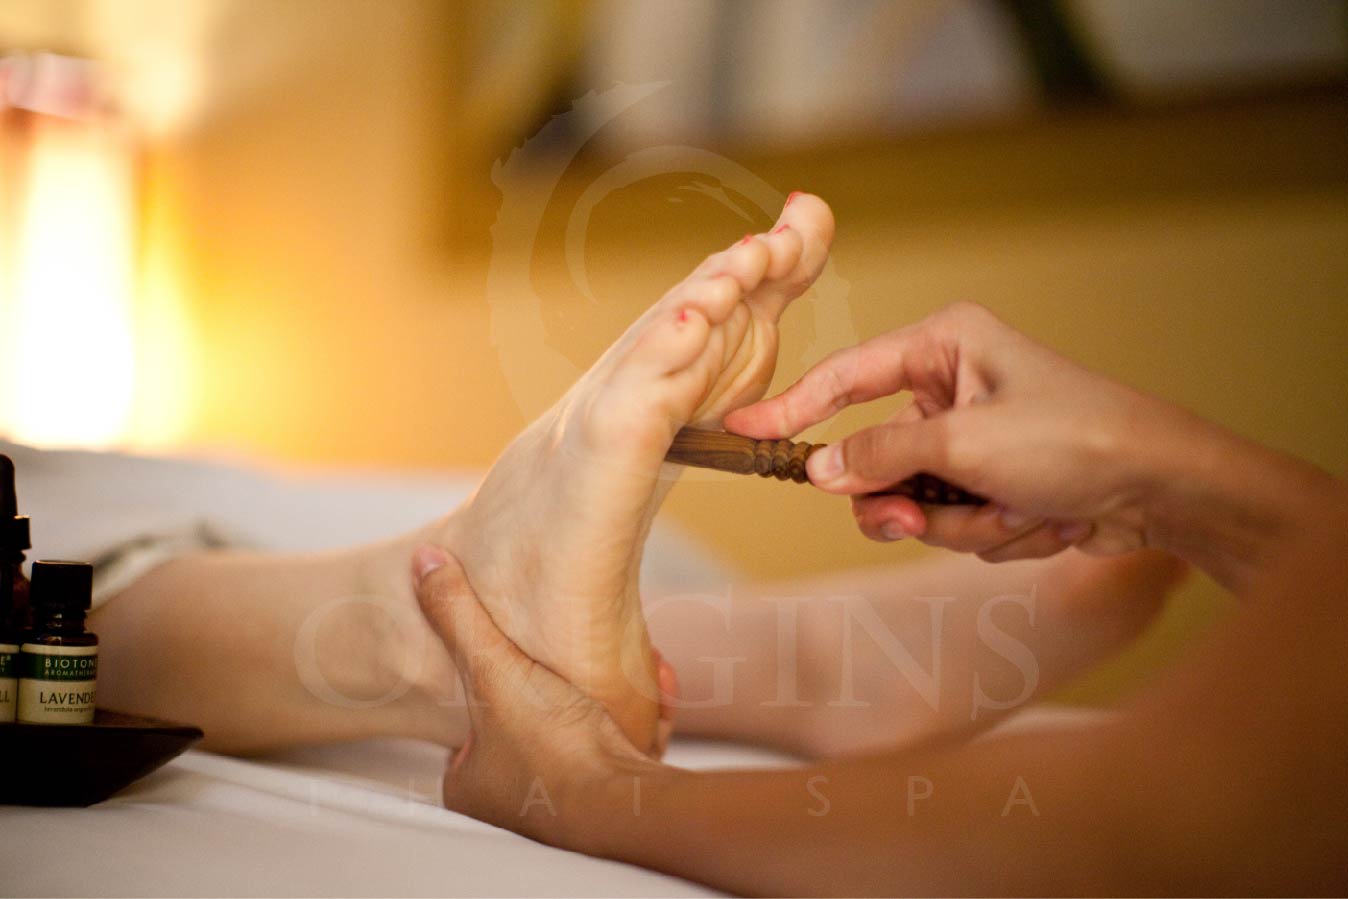 Origins Thai Spa chính là địa điểm Massage tại Sterling, Arlington mà bạn không thể bỏ qua. Với phương pháp Bấm huyệt và Massage độc đáo, bạn sẽ thực sự cảm nhận được sự thư giãn và tăng cường sức khỏe một cách toàn diện.